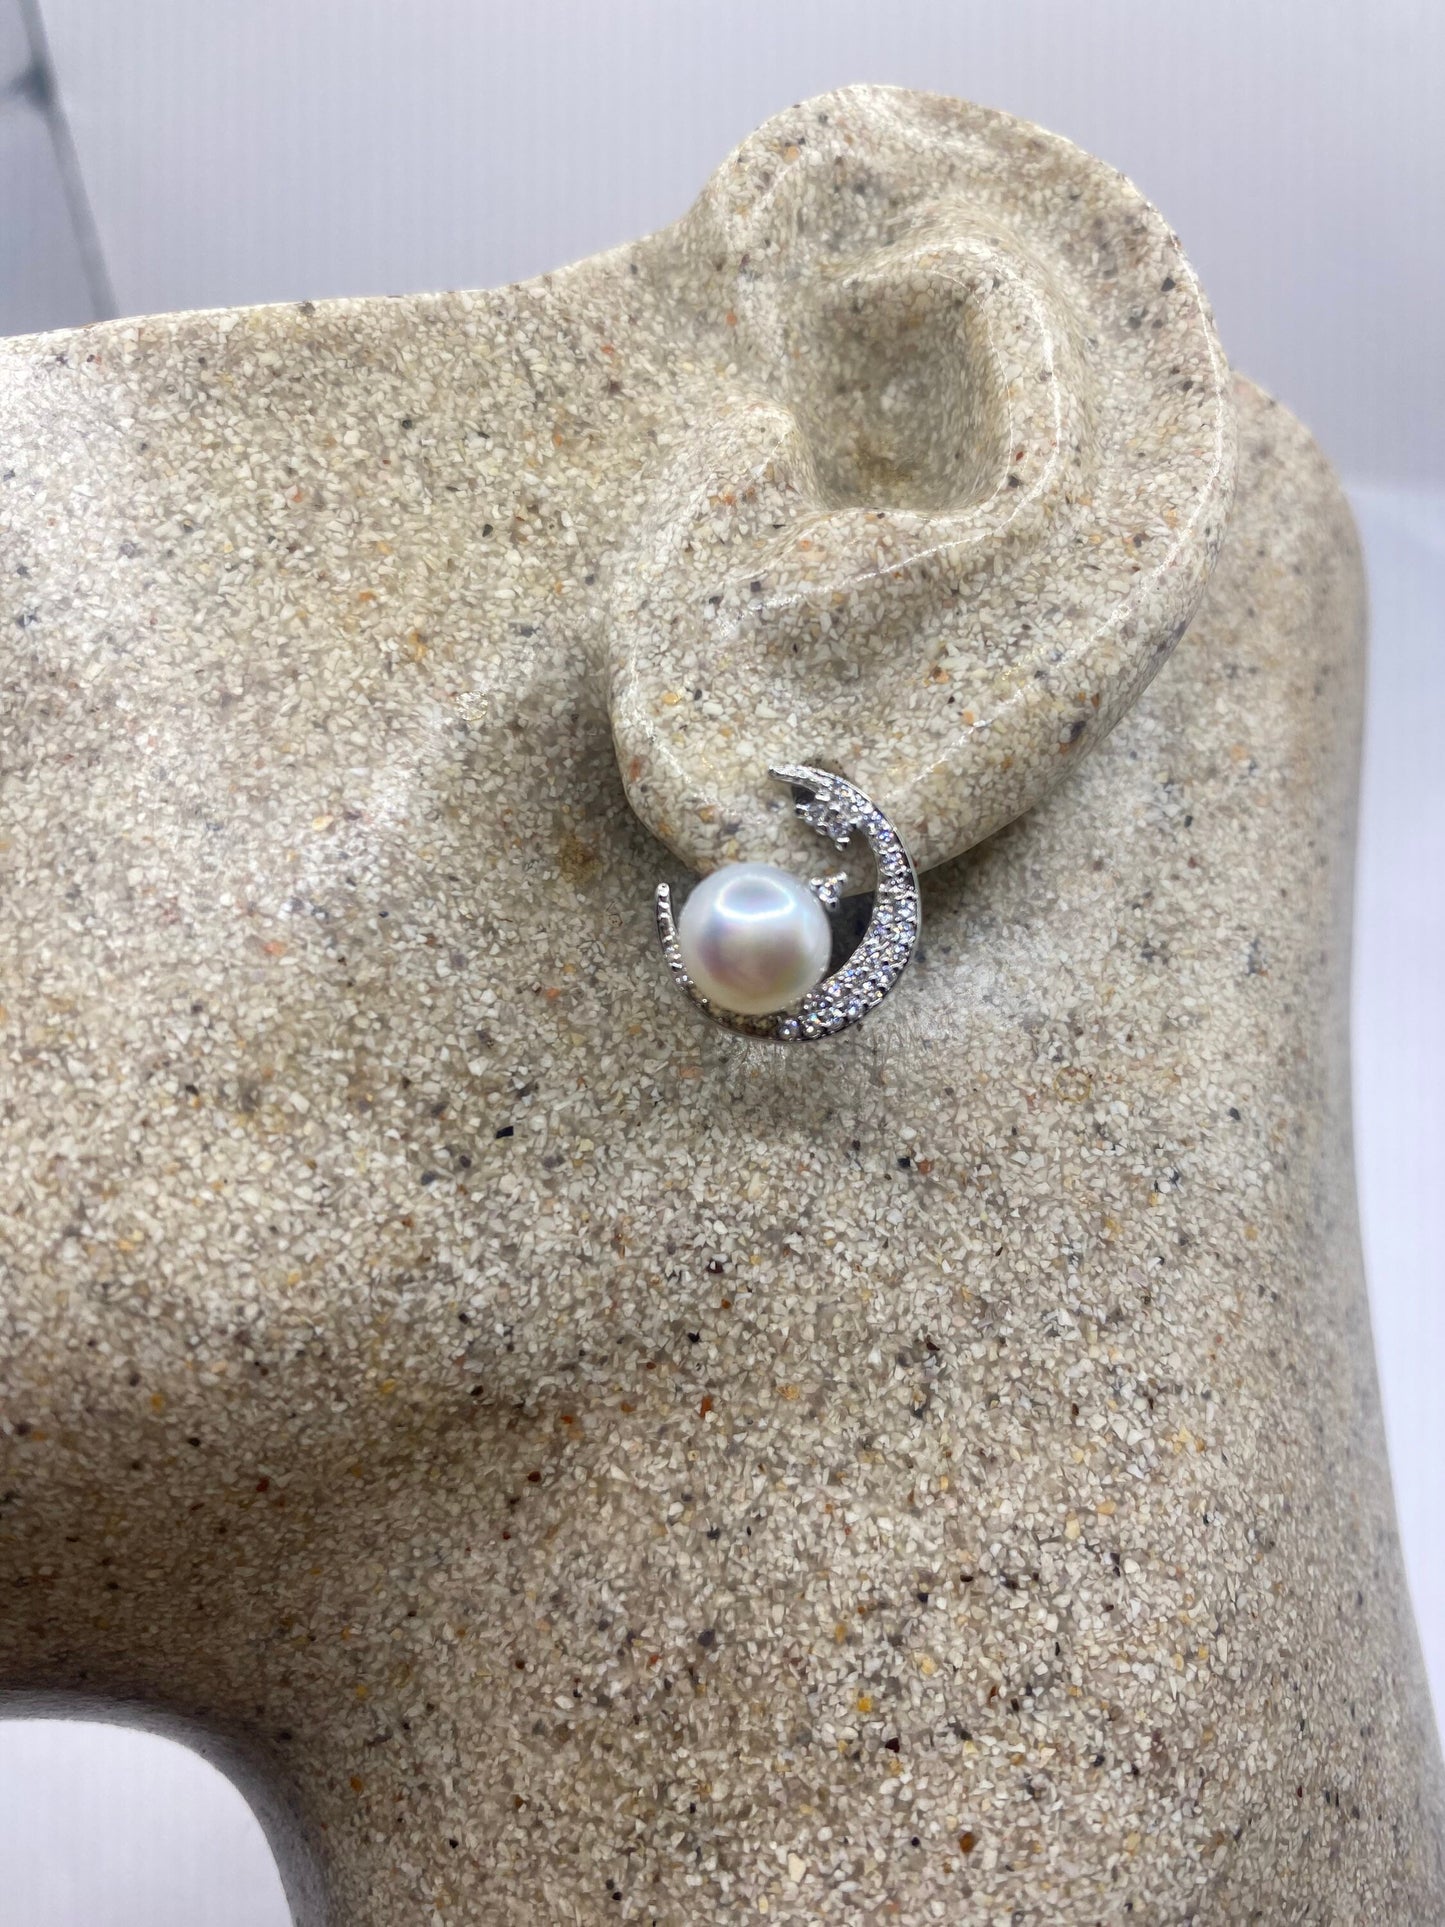 Vintage Crystal Crescent Moon Genuine Pearl Sterling Silver Stud Earrings